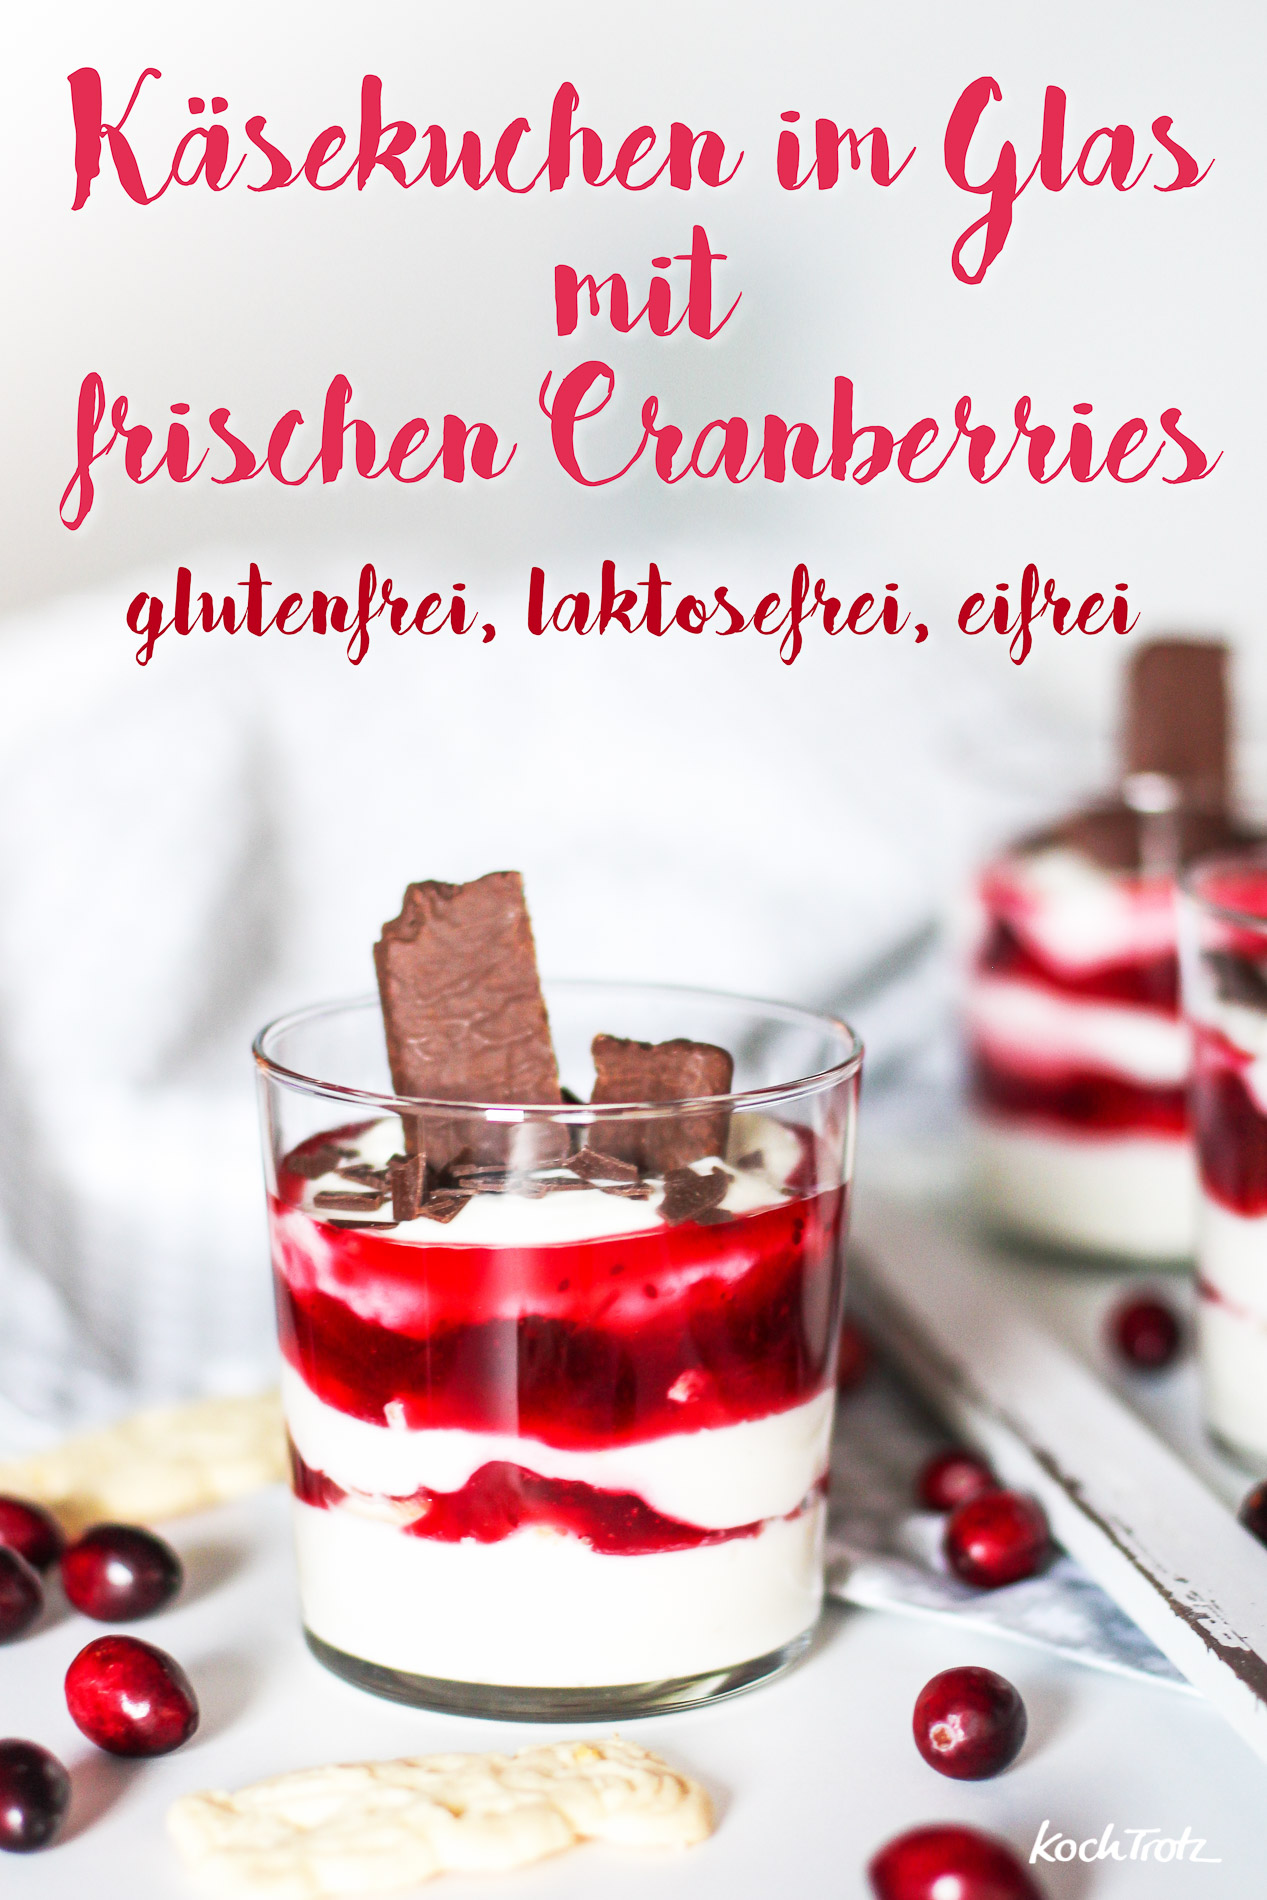 kasekuchen-im-glas-mit-cranberries-glutenfrei-laktosefrei-eifrei-2